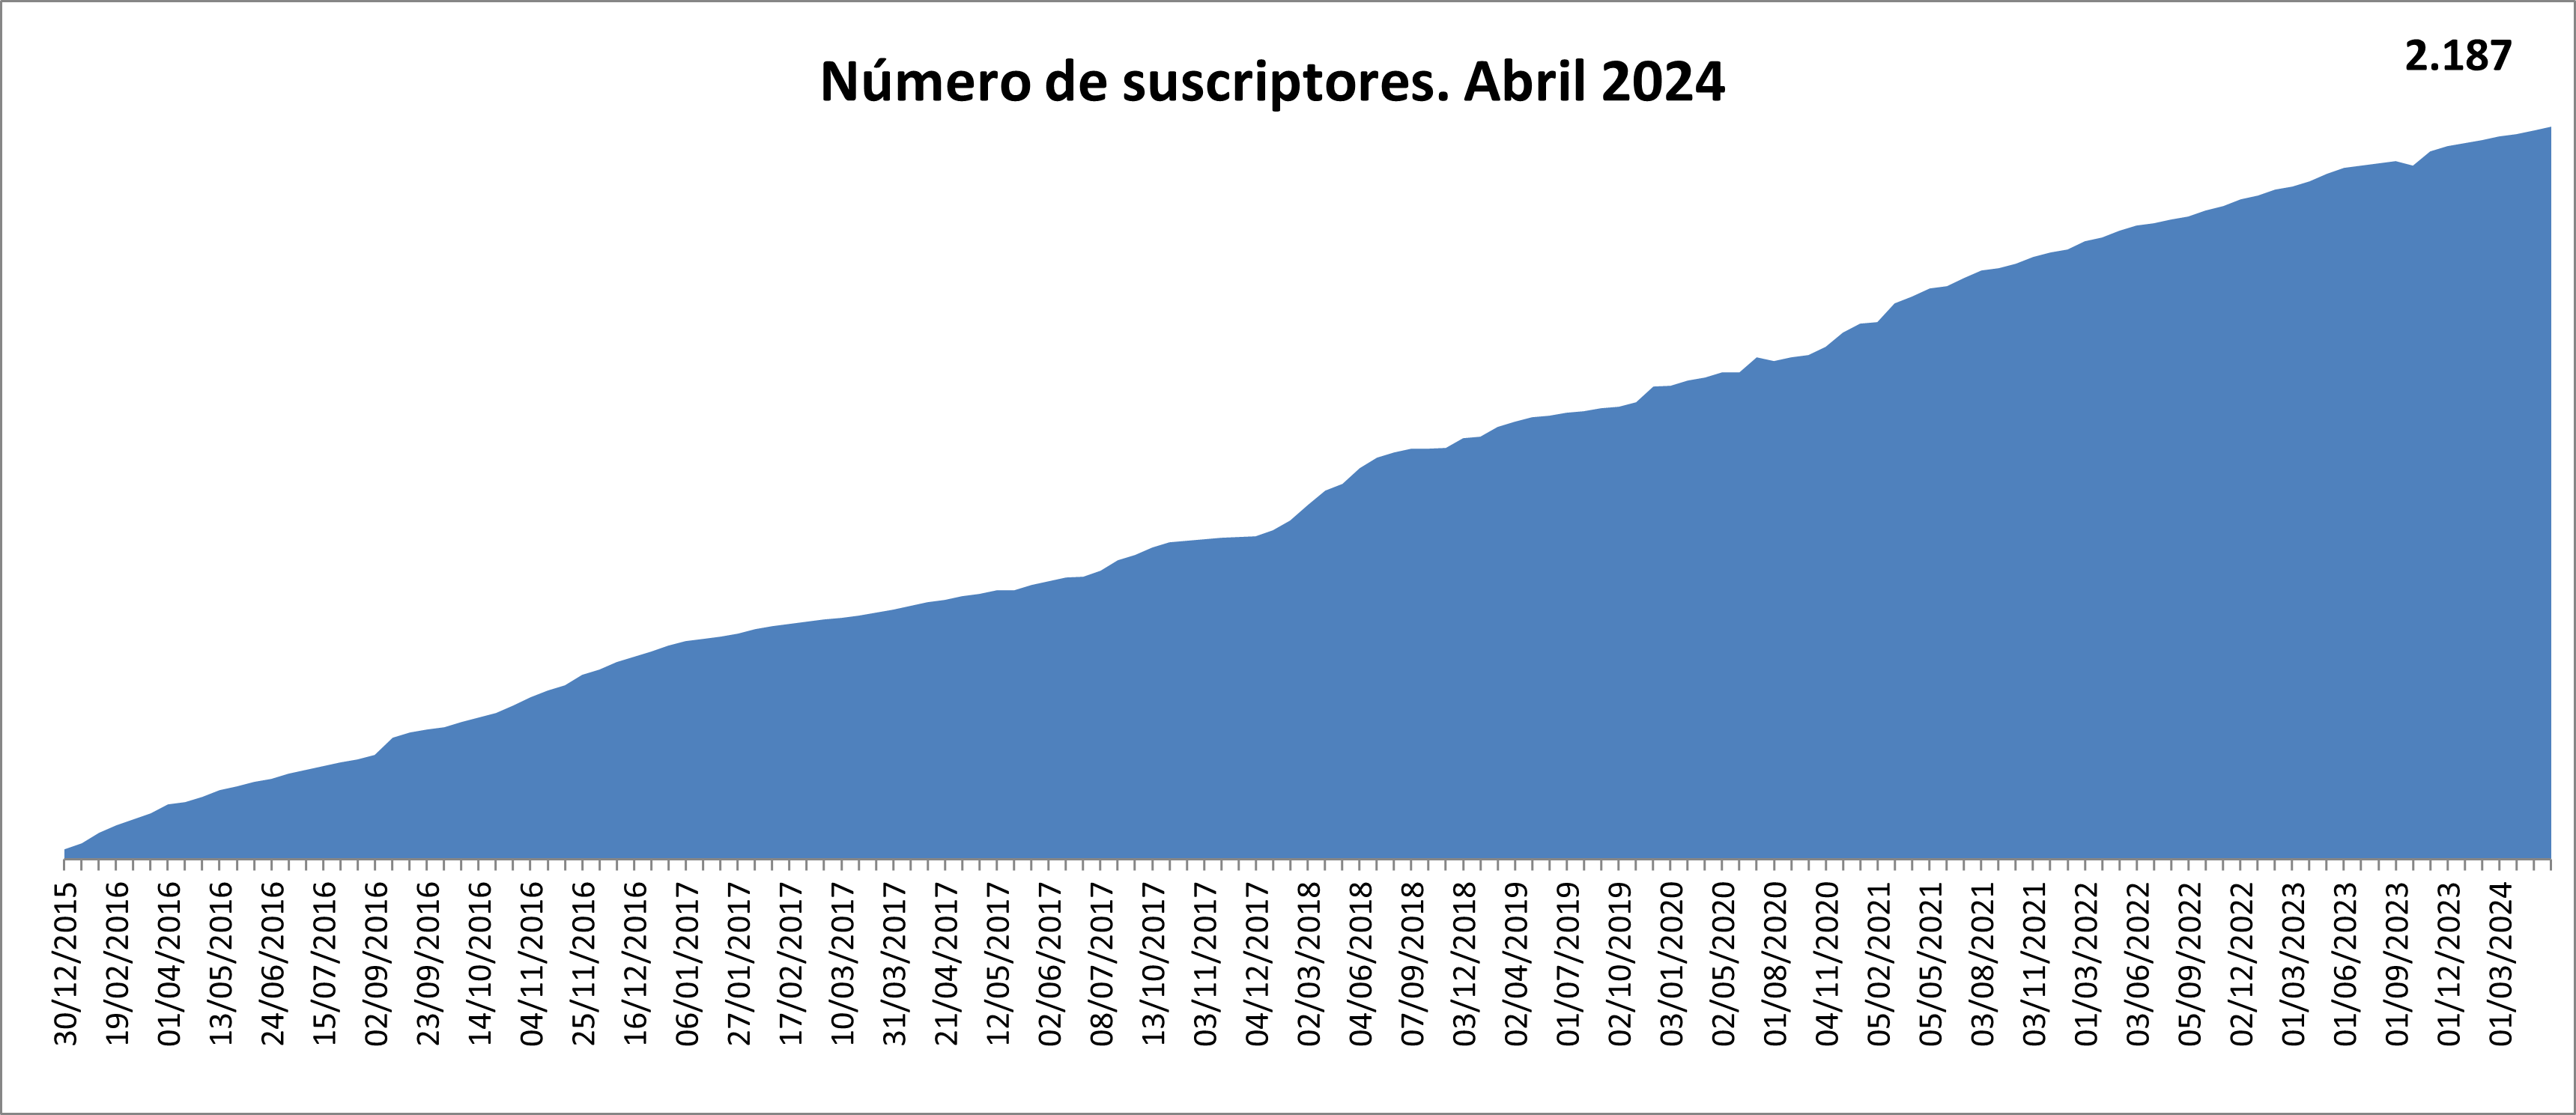 Número de suscriptores 1969. Octubre 2022